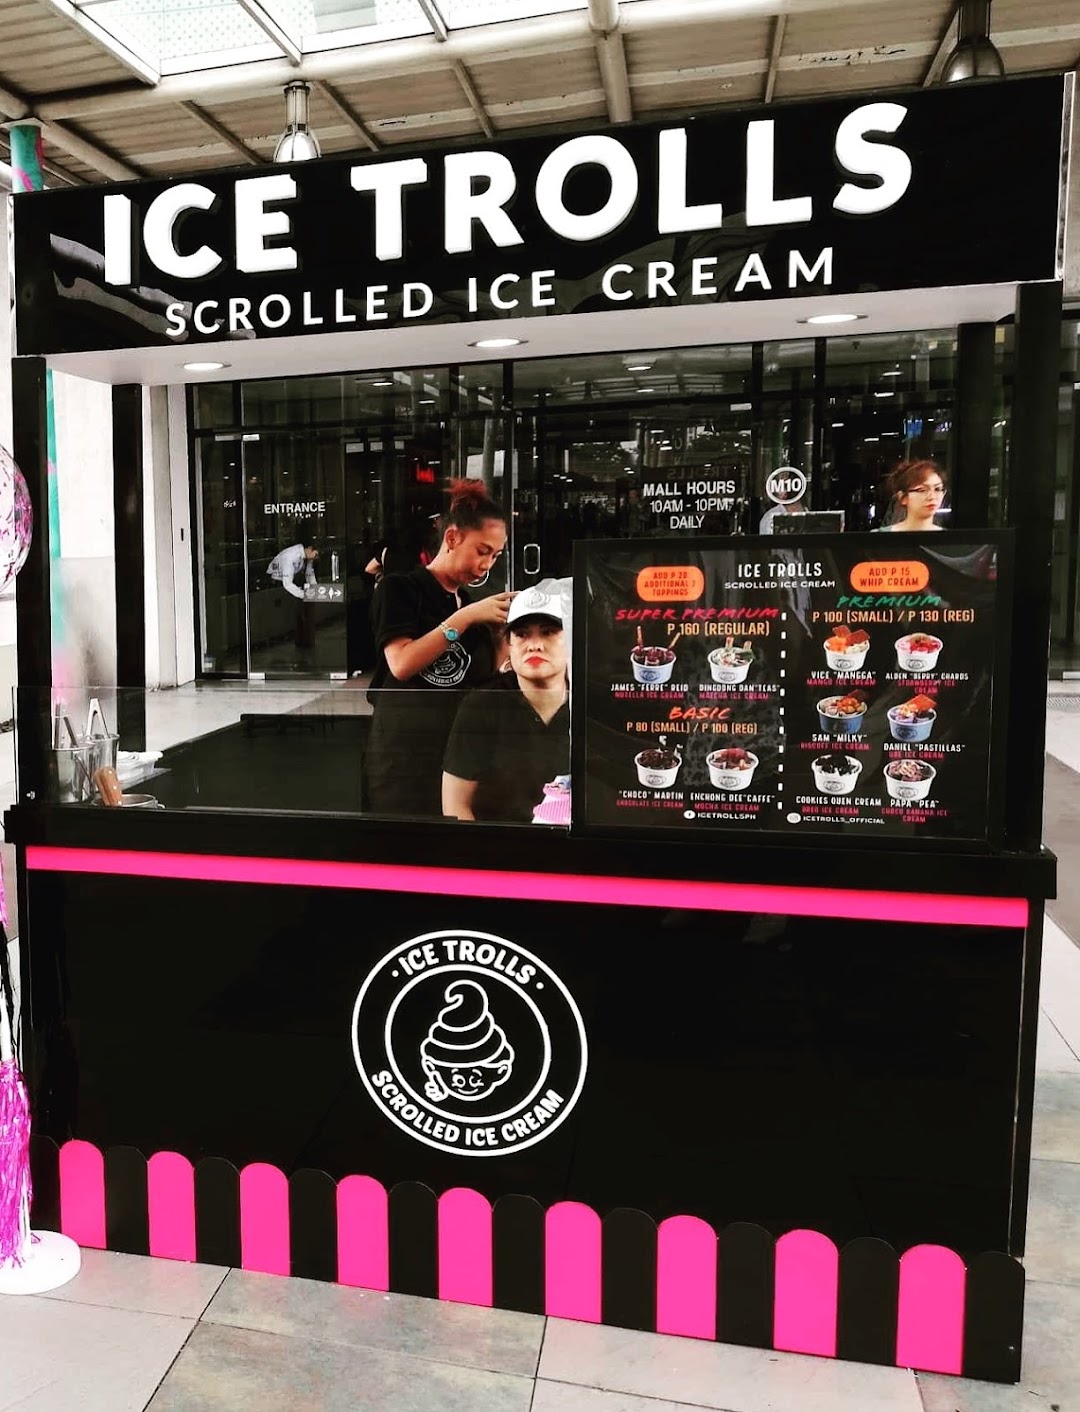 Ice Trolls Rolled Ice Cream Quezon City